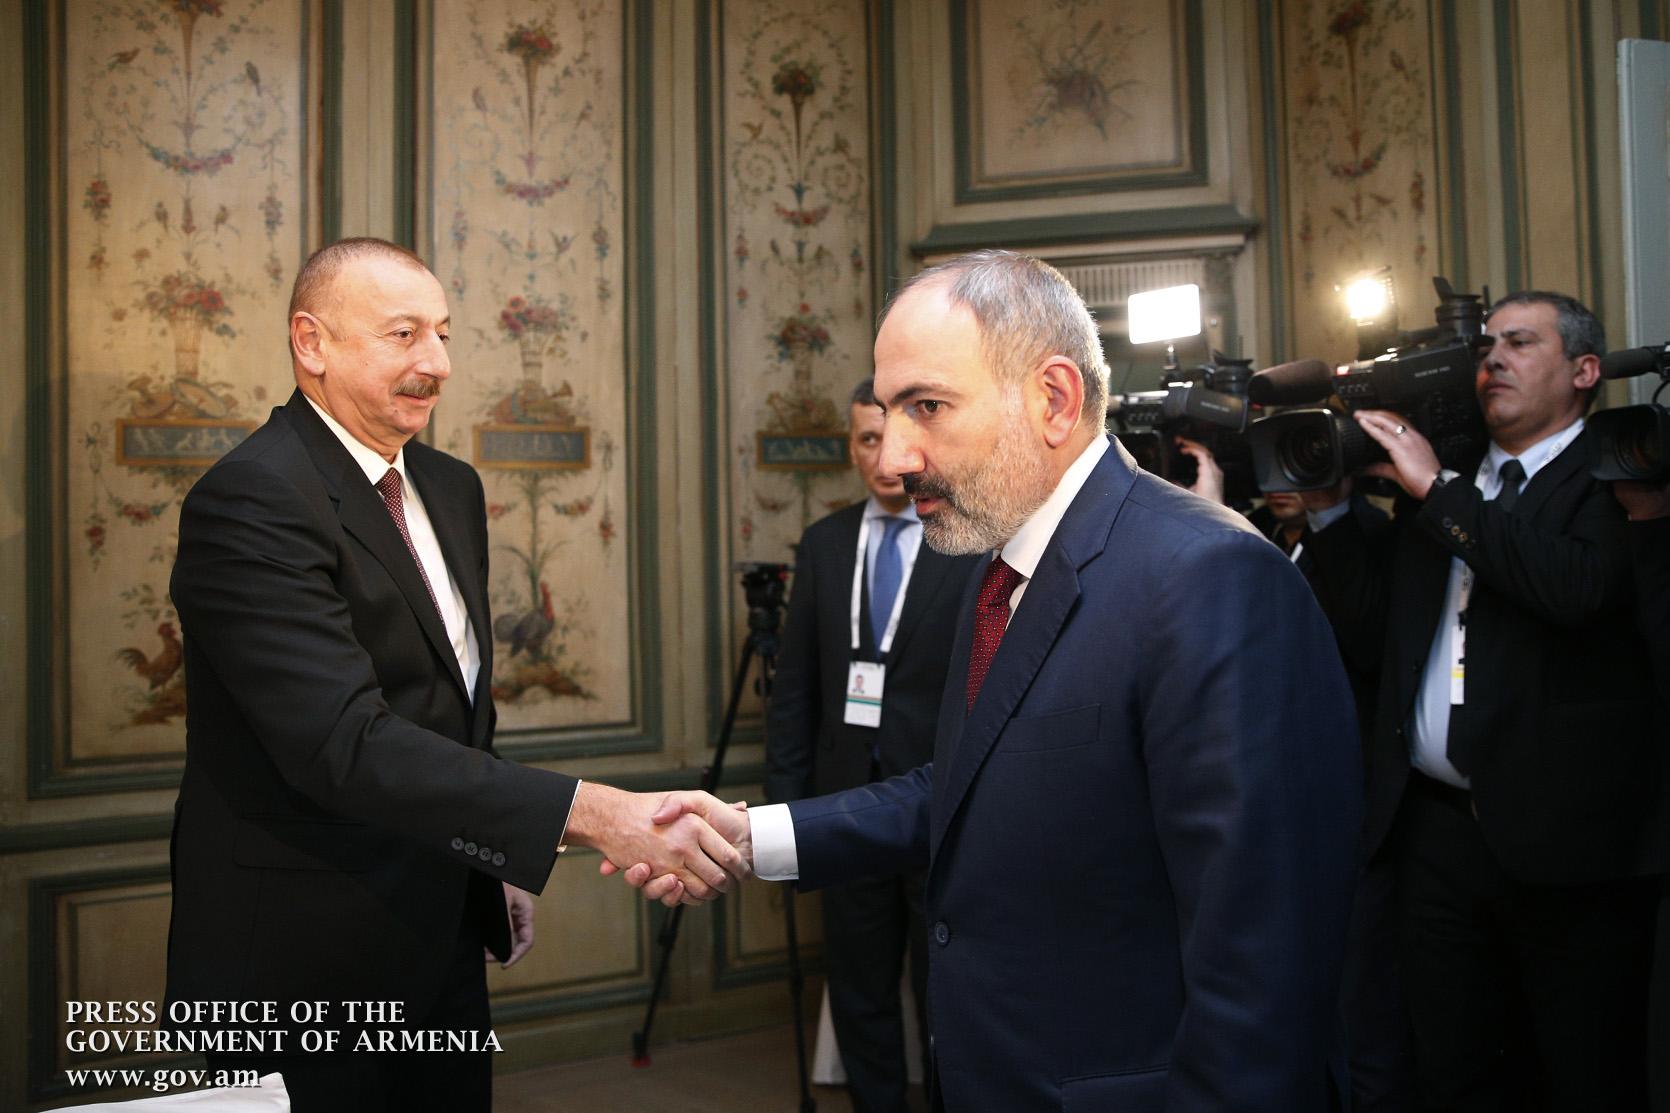 Դեռ պարզ չէ՝ Ադրբեջանը վերահաստատո՞ւմ է երեք սկզբունքների շուրջ խաղաղության պայմանագրի կնքումը Հայաստանի հետ